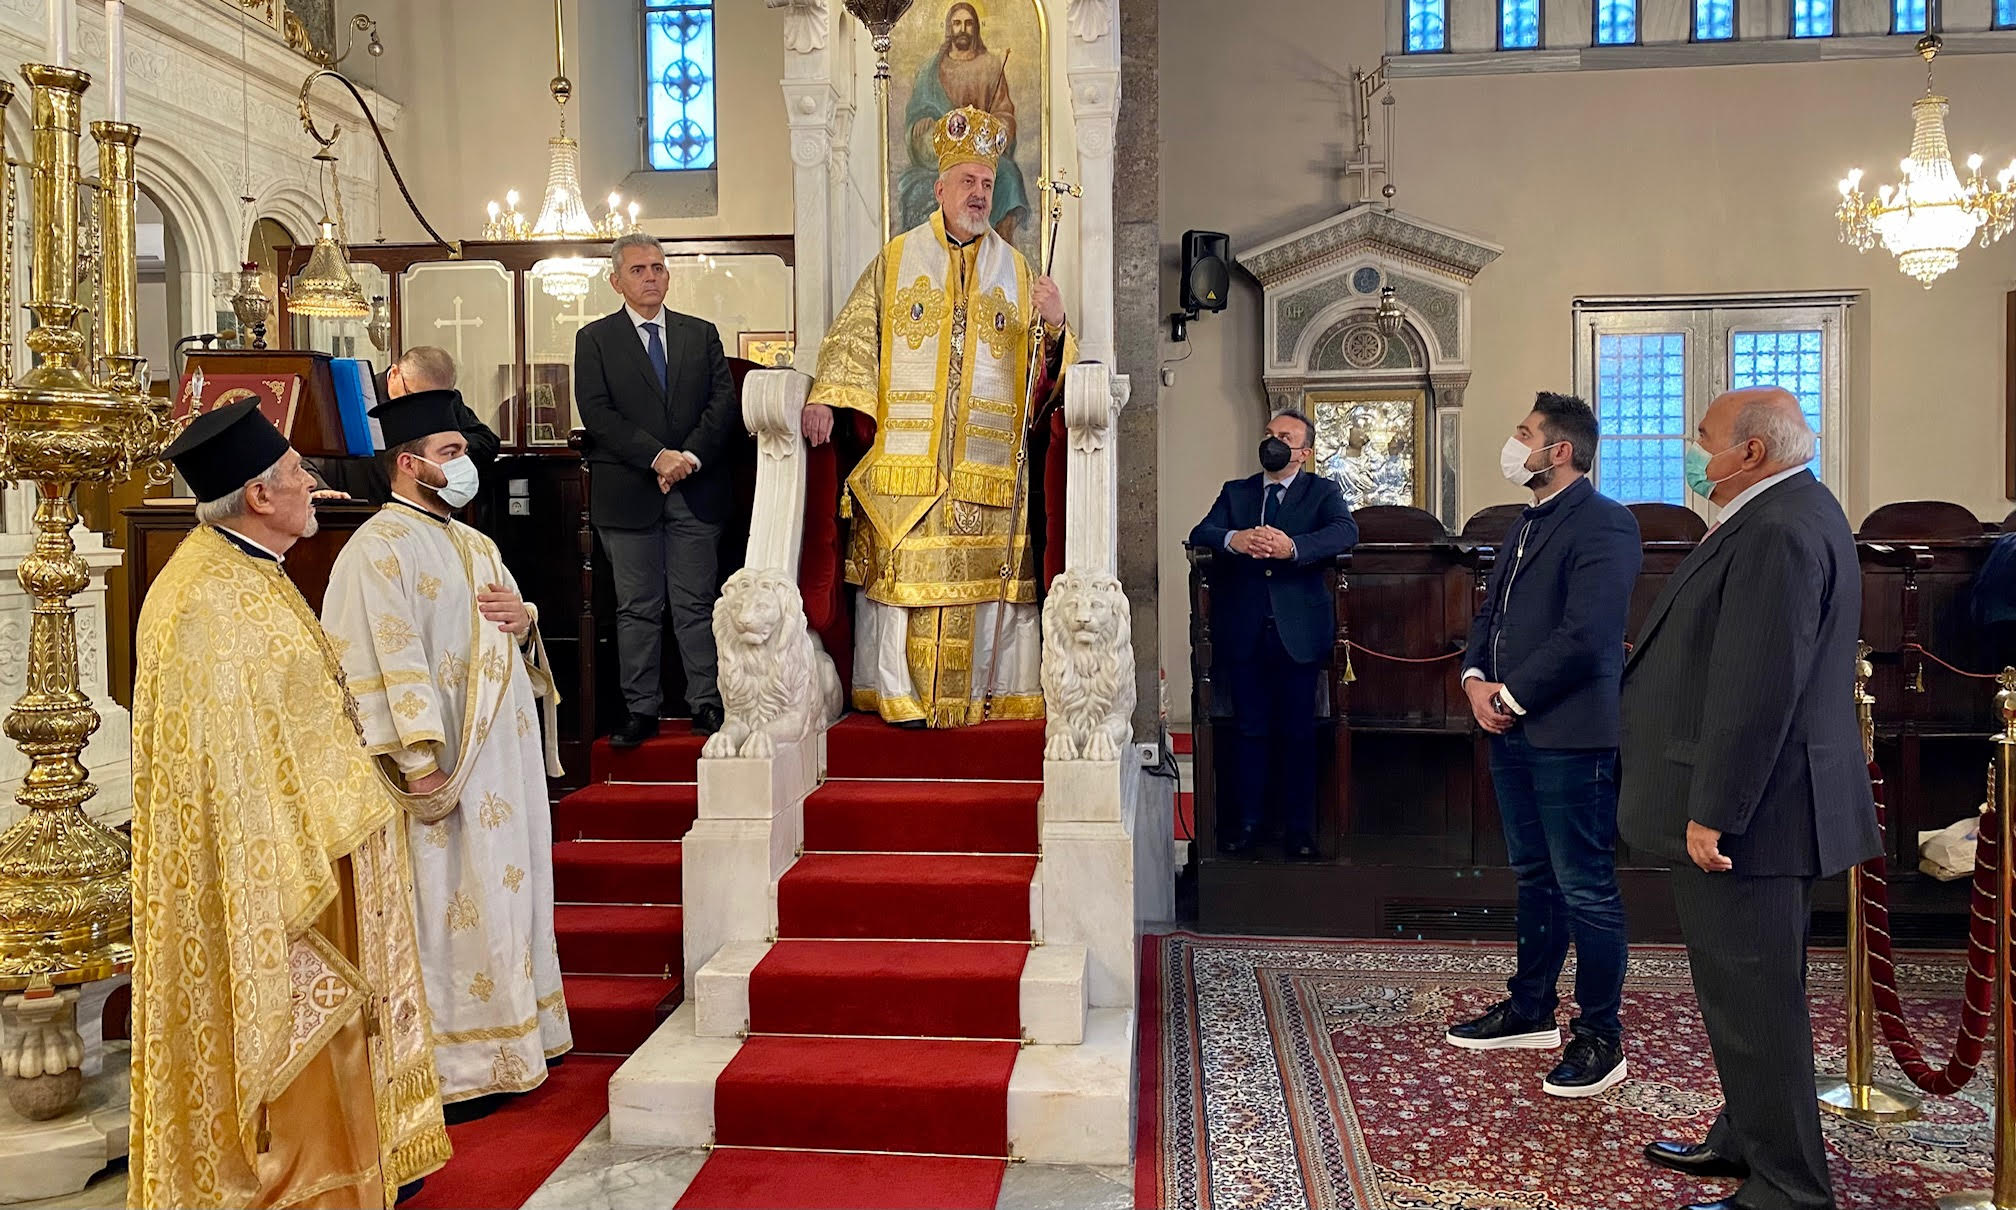 Ο Μάξιμος Χαρακόπουλος προσφωνώντας τον μητροπολίτη Χαλκηδόνος στον καθεδρικό ναό της Αγίας Τριάδος